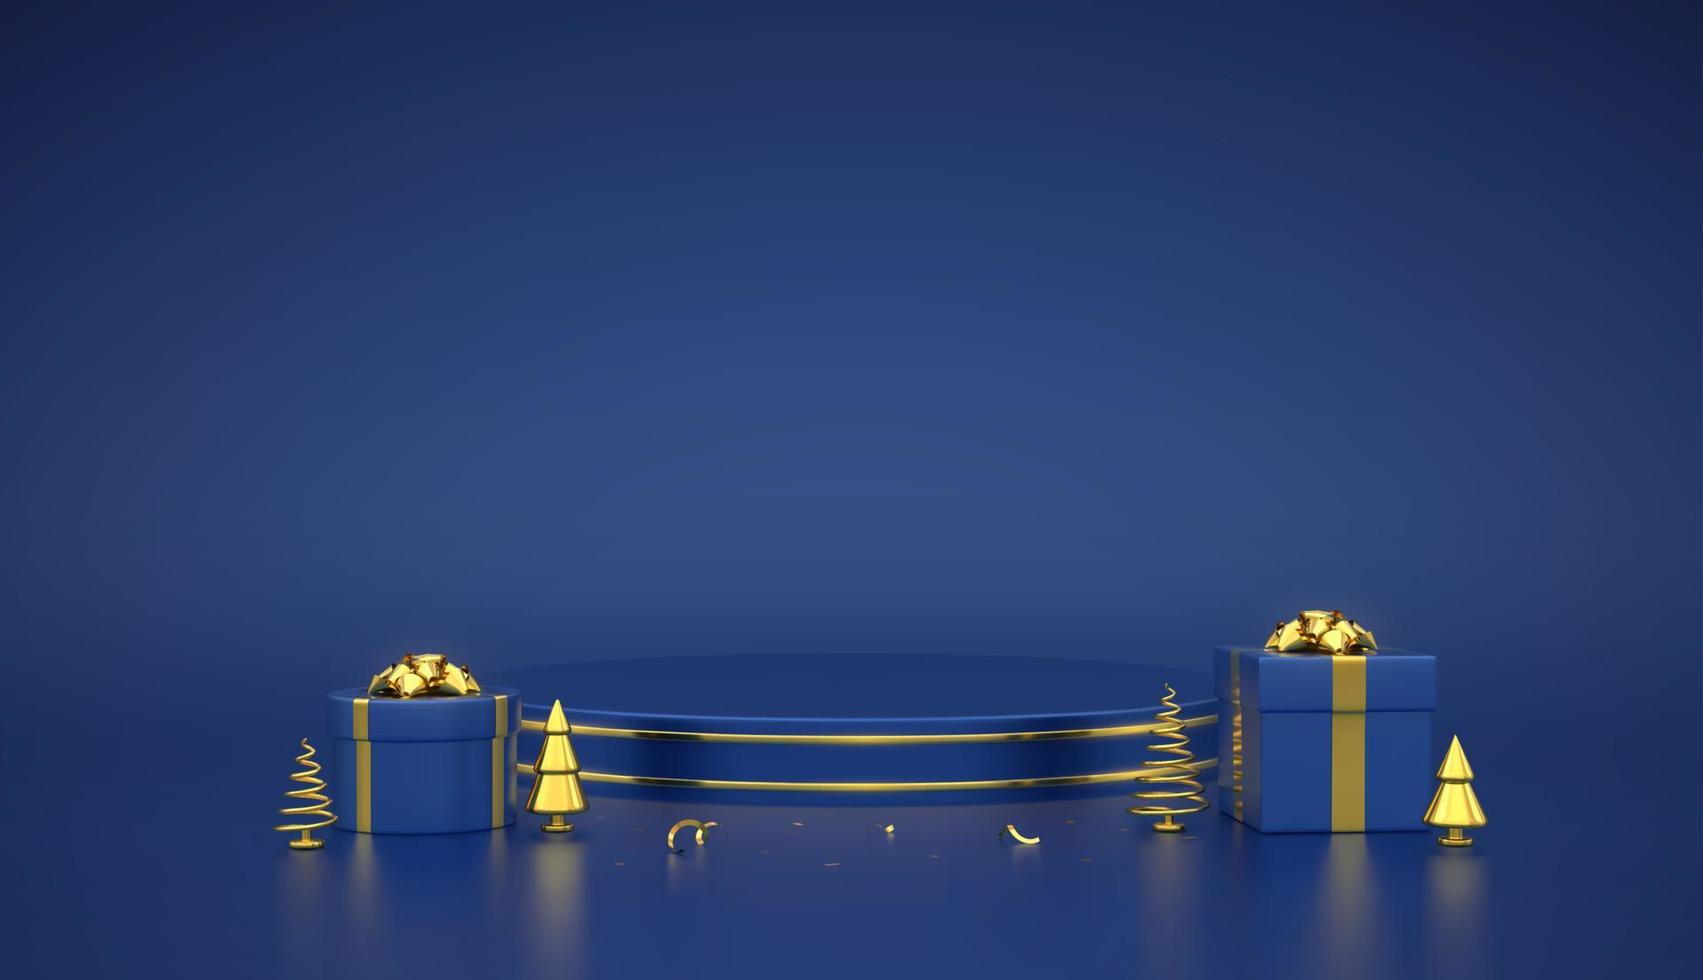 pódio redondo azul. cena e plataforma 3d com círculo de ouro sobre fundo azul. pedestal em branco com caixas de presente com laço dourado e pinho metálico dourado, abetos. ilustração vetorial realista. vetor